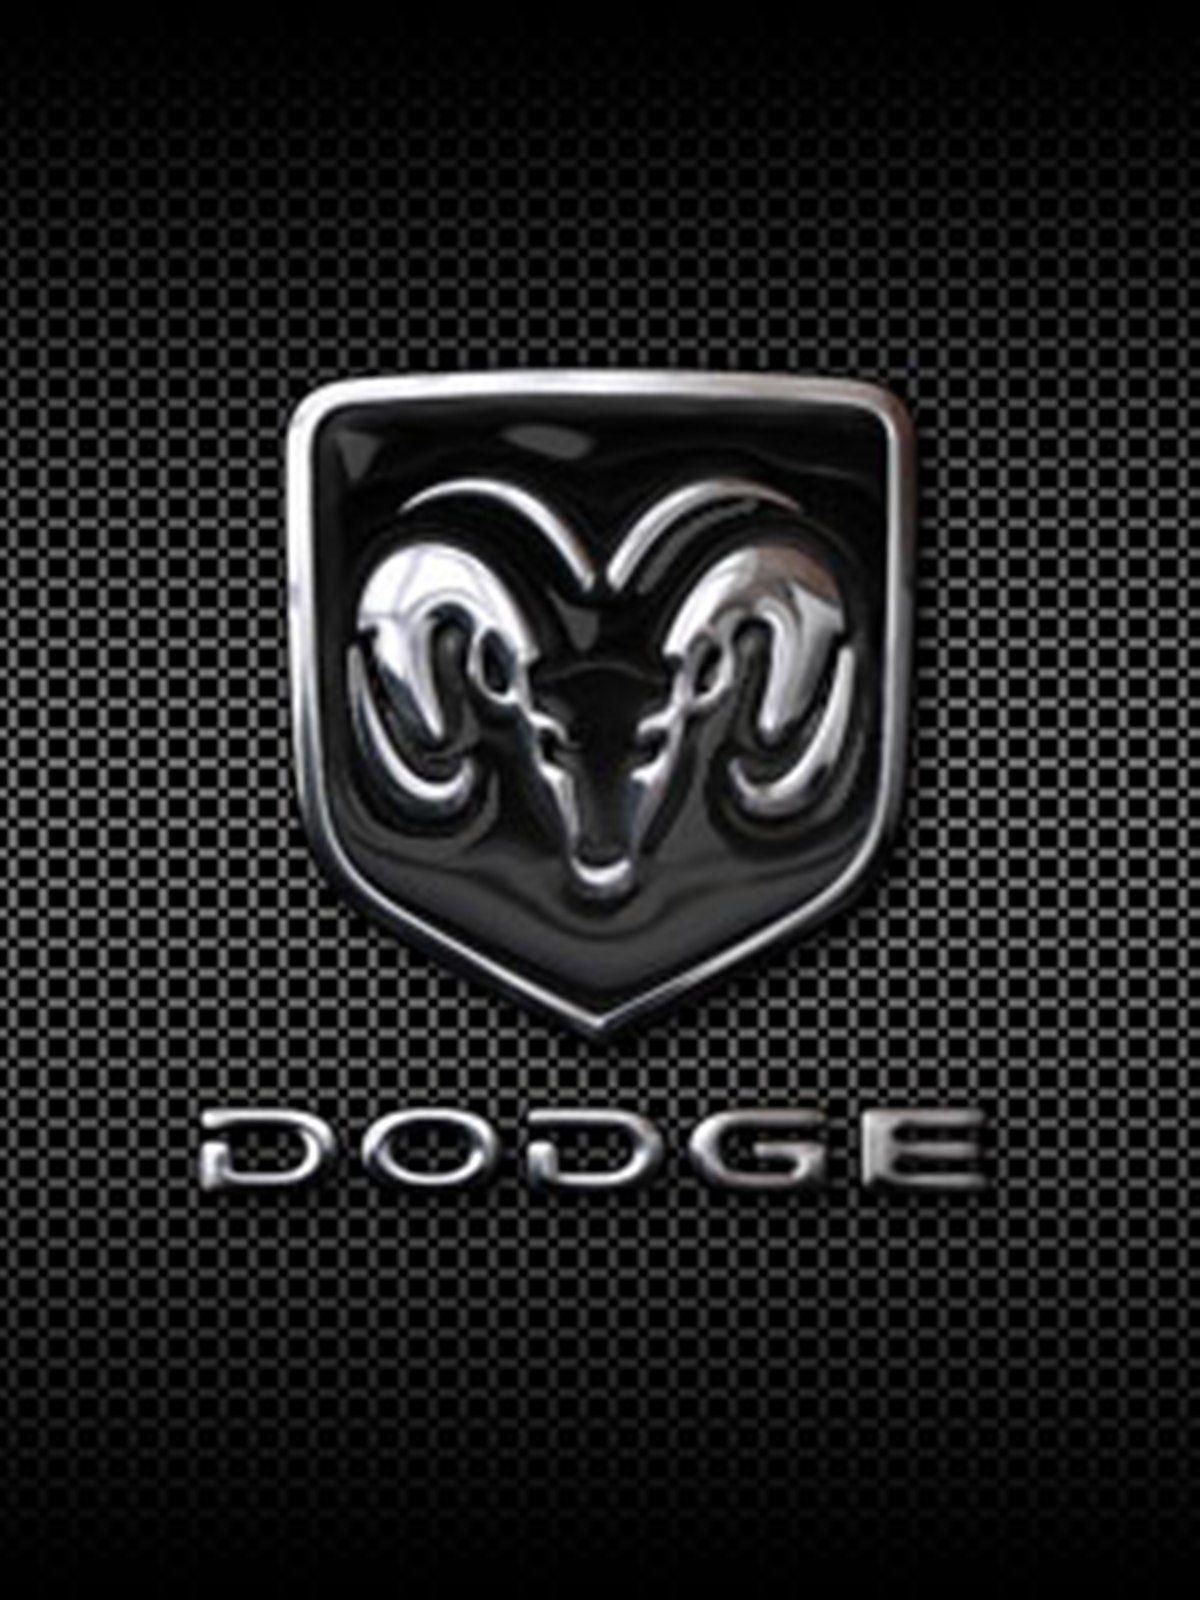 Dodge 1500 Wallpapers